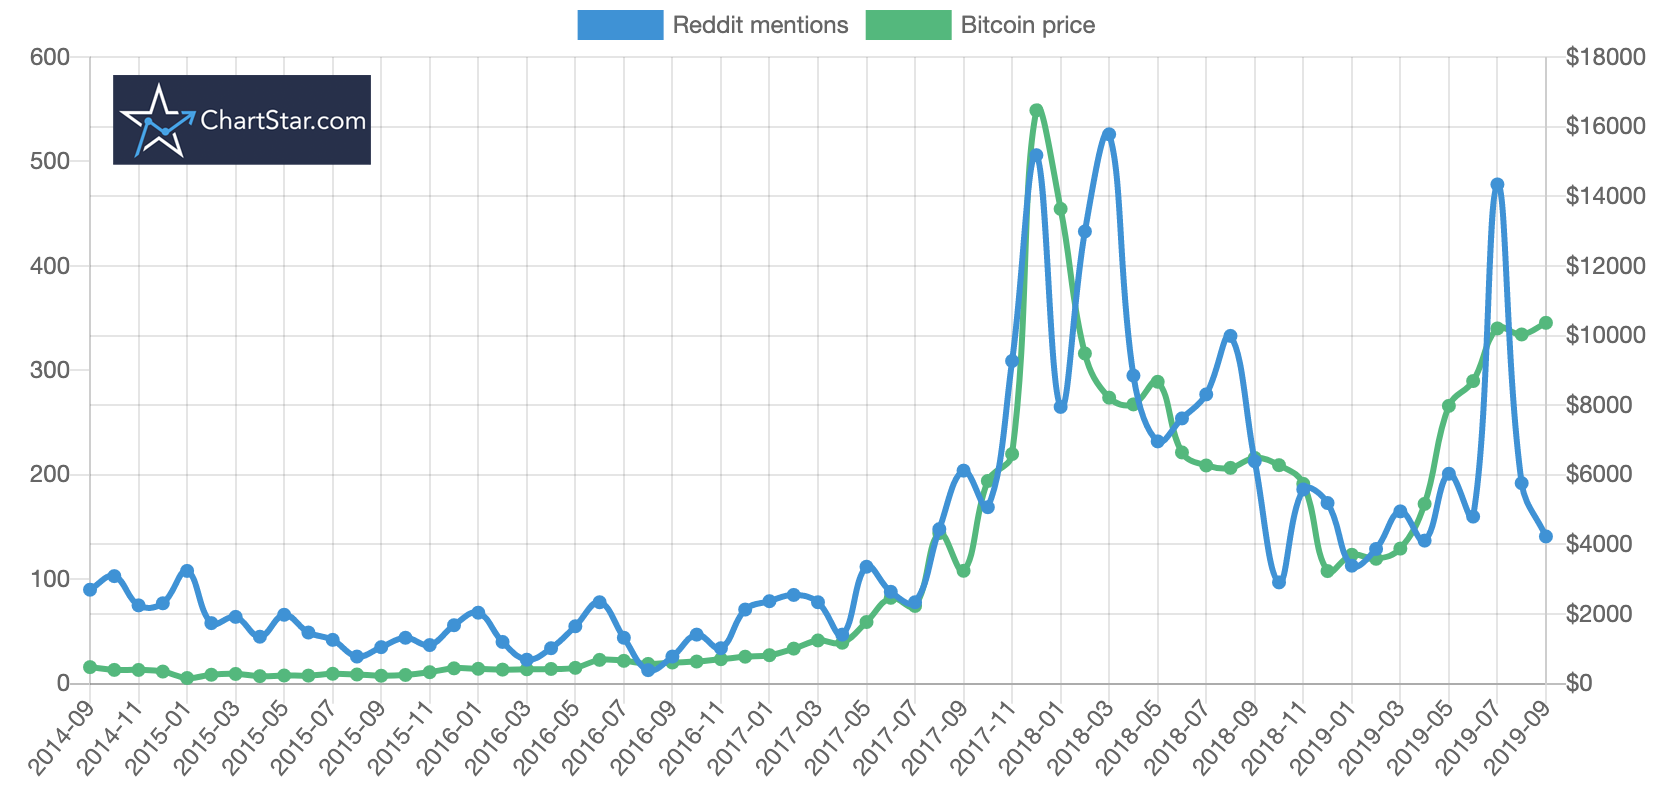 bitcoin price vs reddit mentions